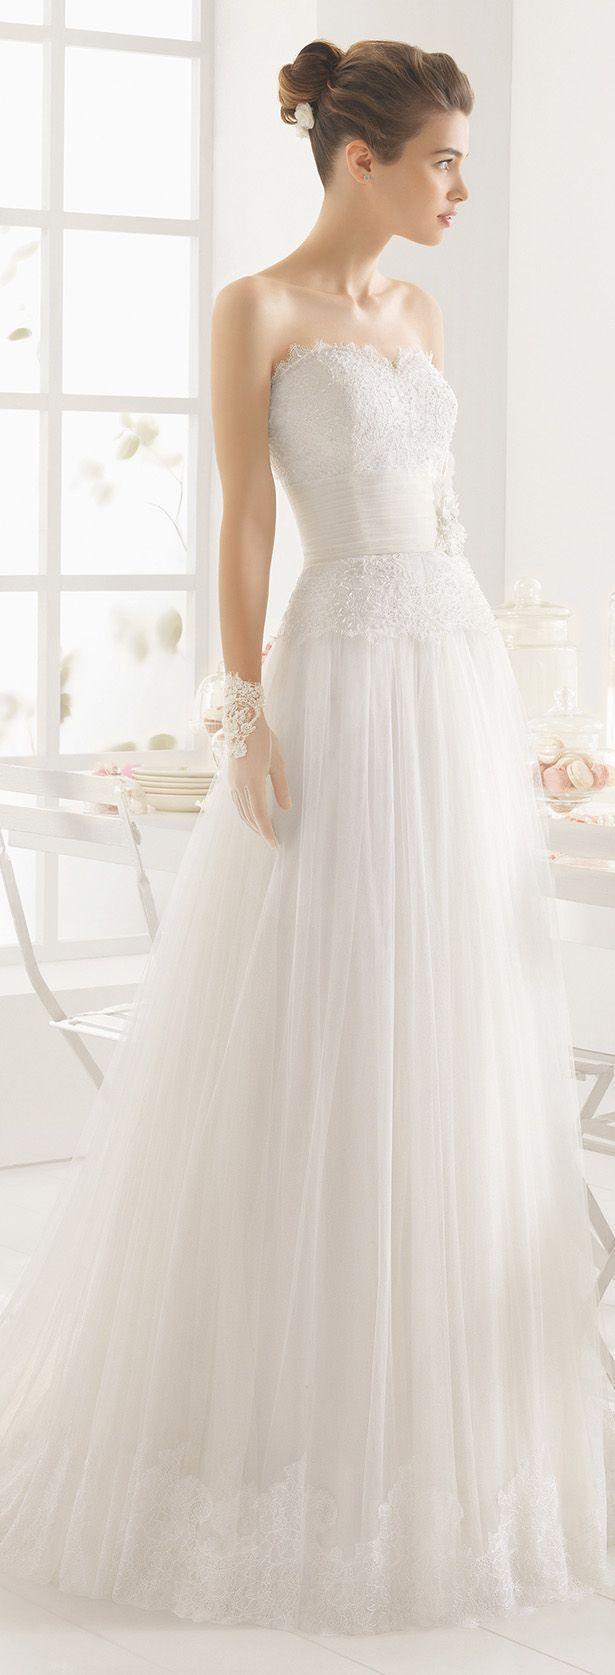 زفاف - Bridal Fashion Inspiration